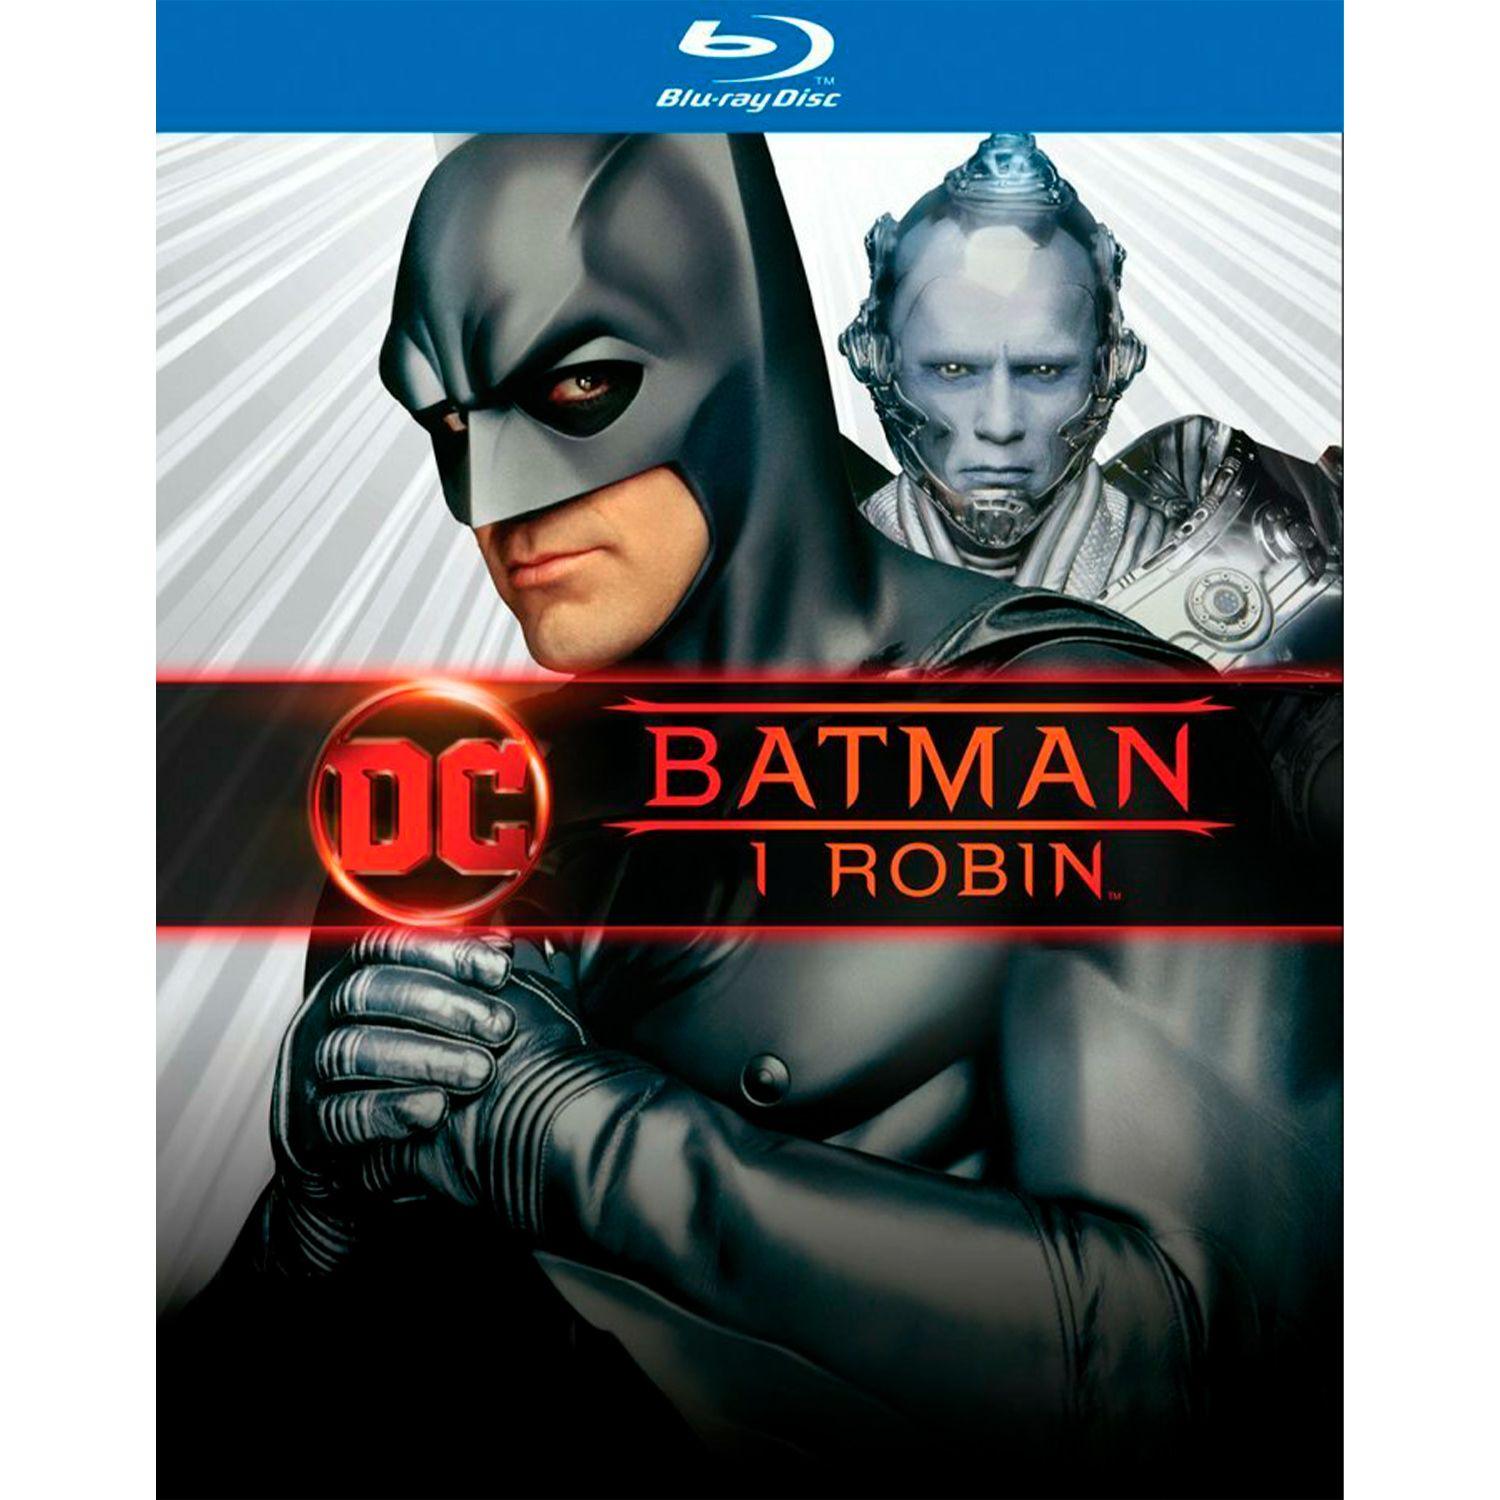 Бэтмен и Робин (Blu-ray)